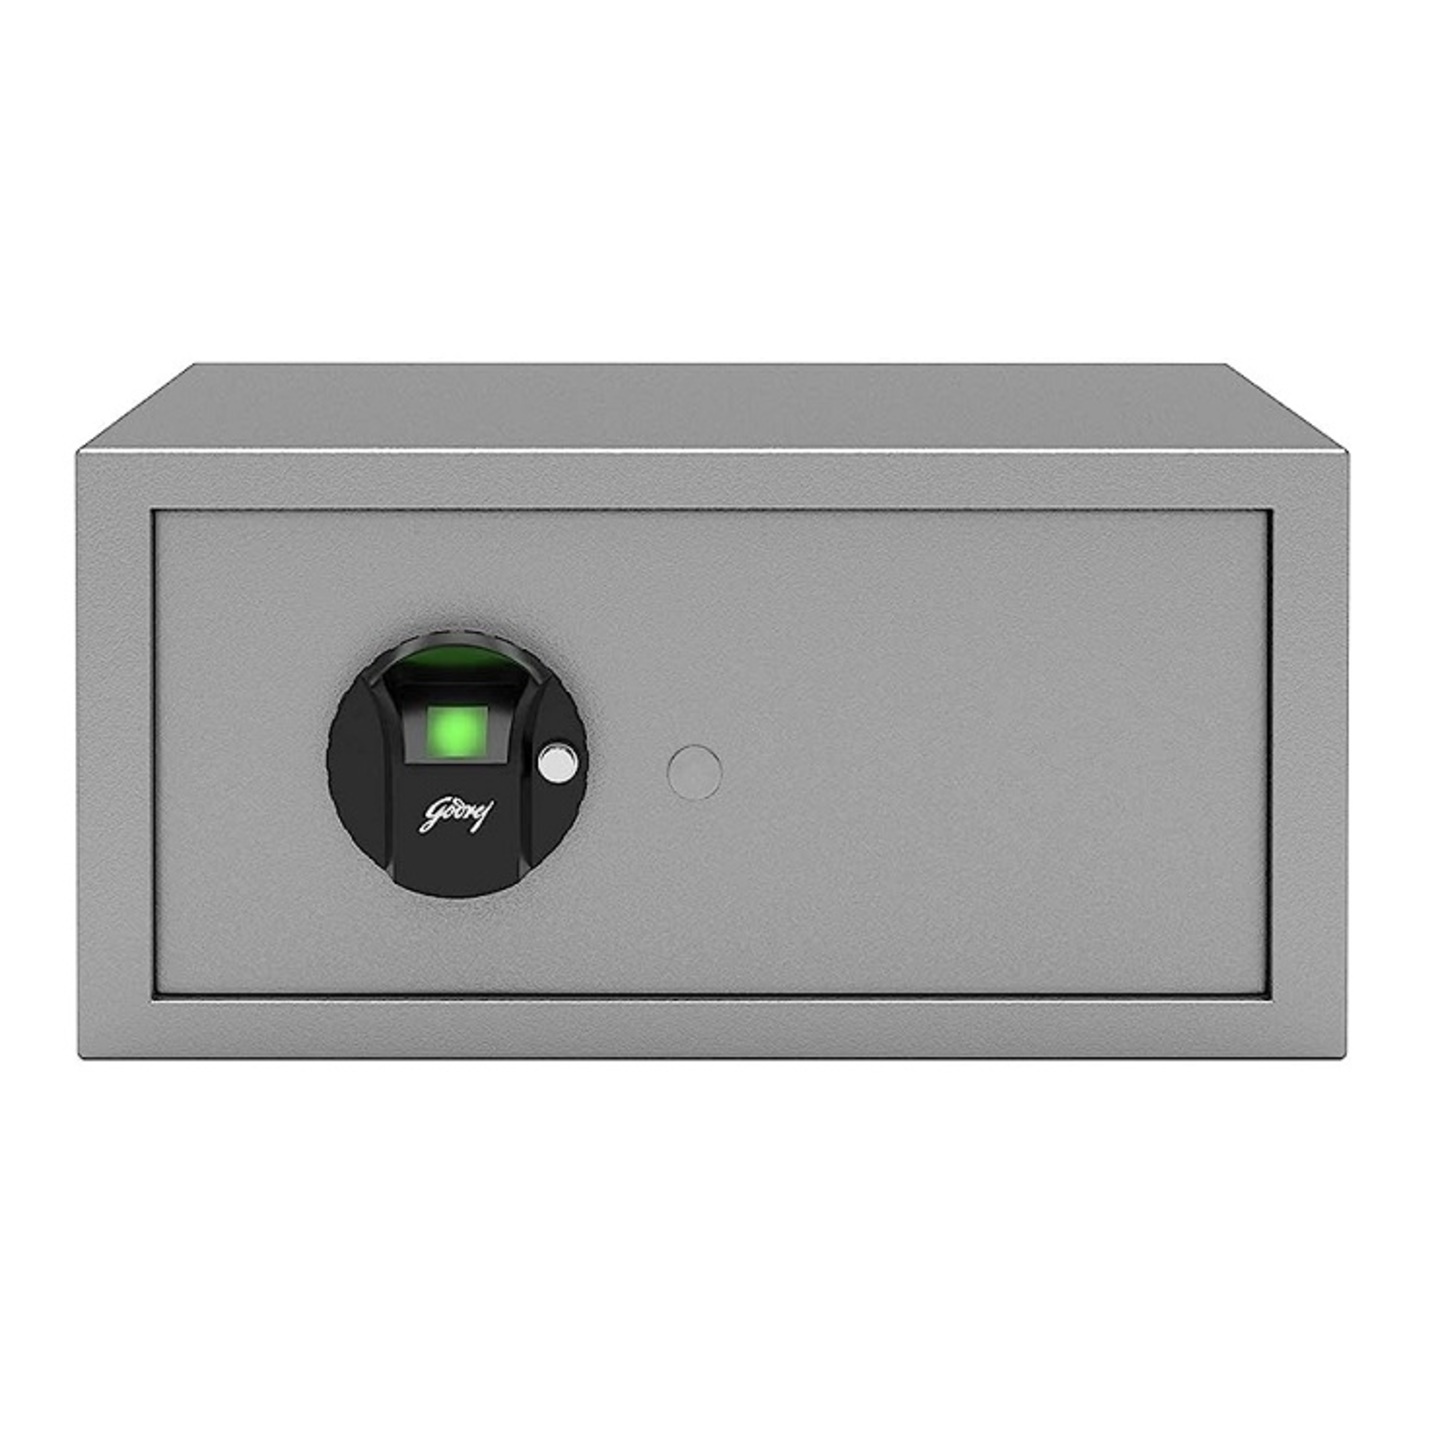 Godrej Forte Pro 20 Litres Biometric Safe with Optical Finger Print Sensor 